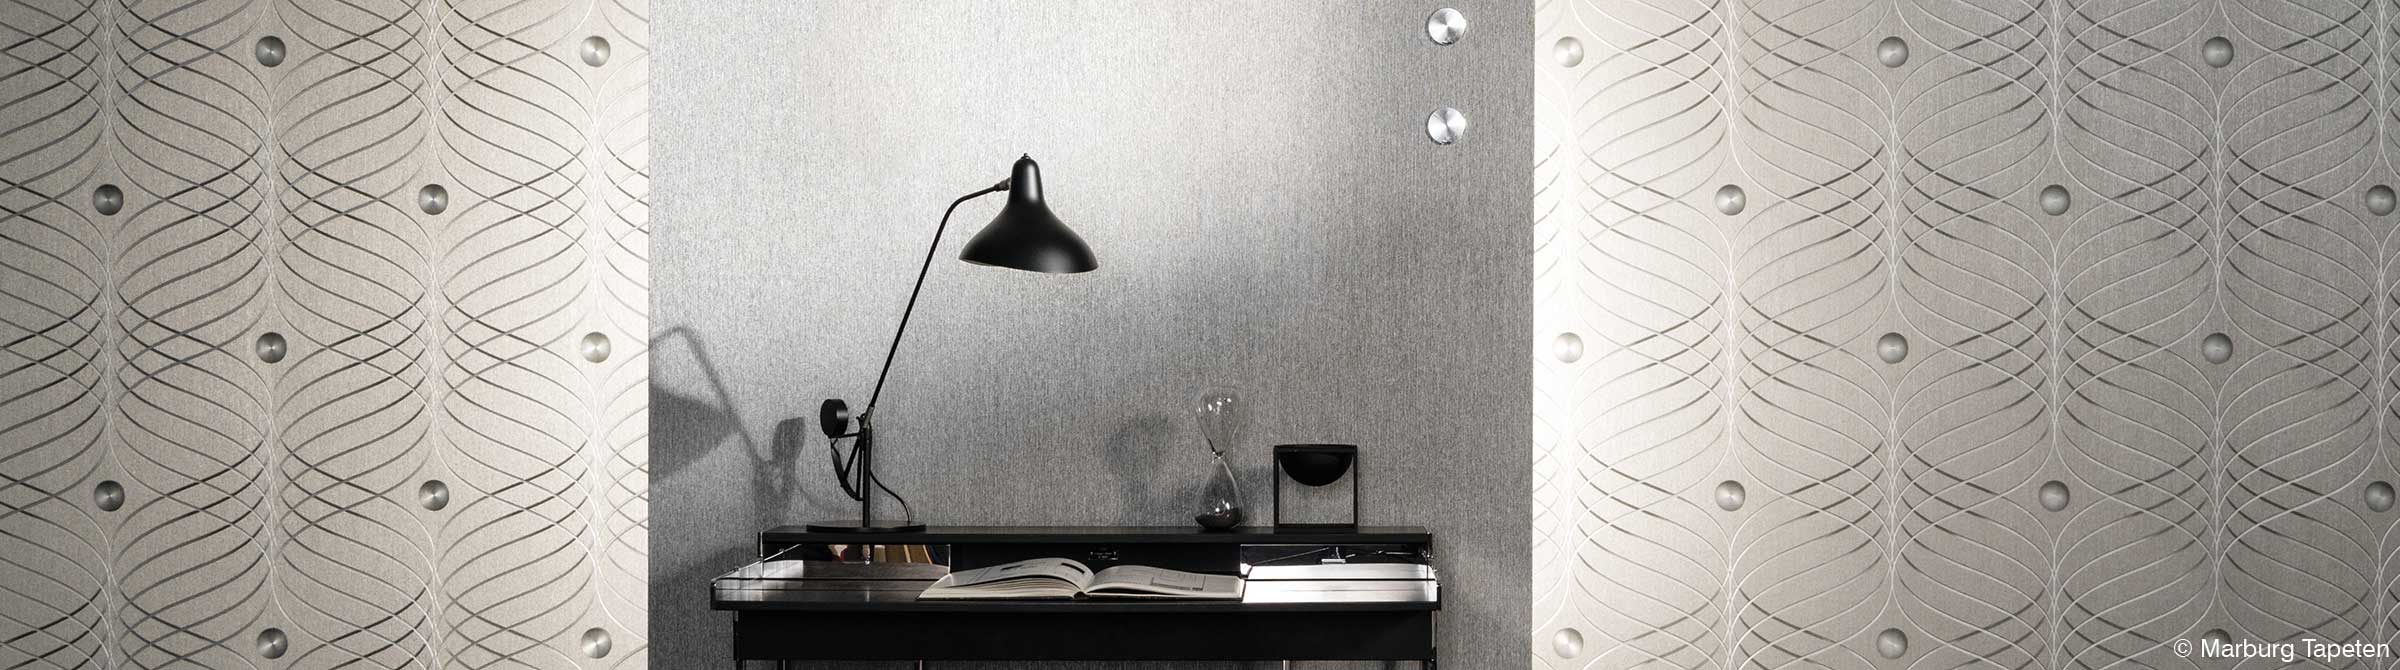 Elegante Coolness für das Büro - Designertapete in Silber